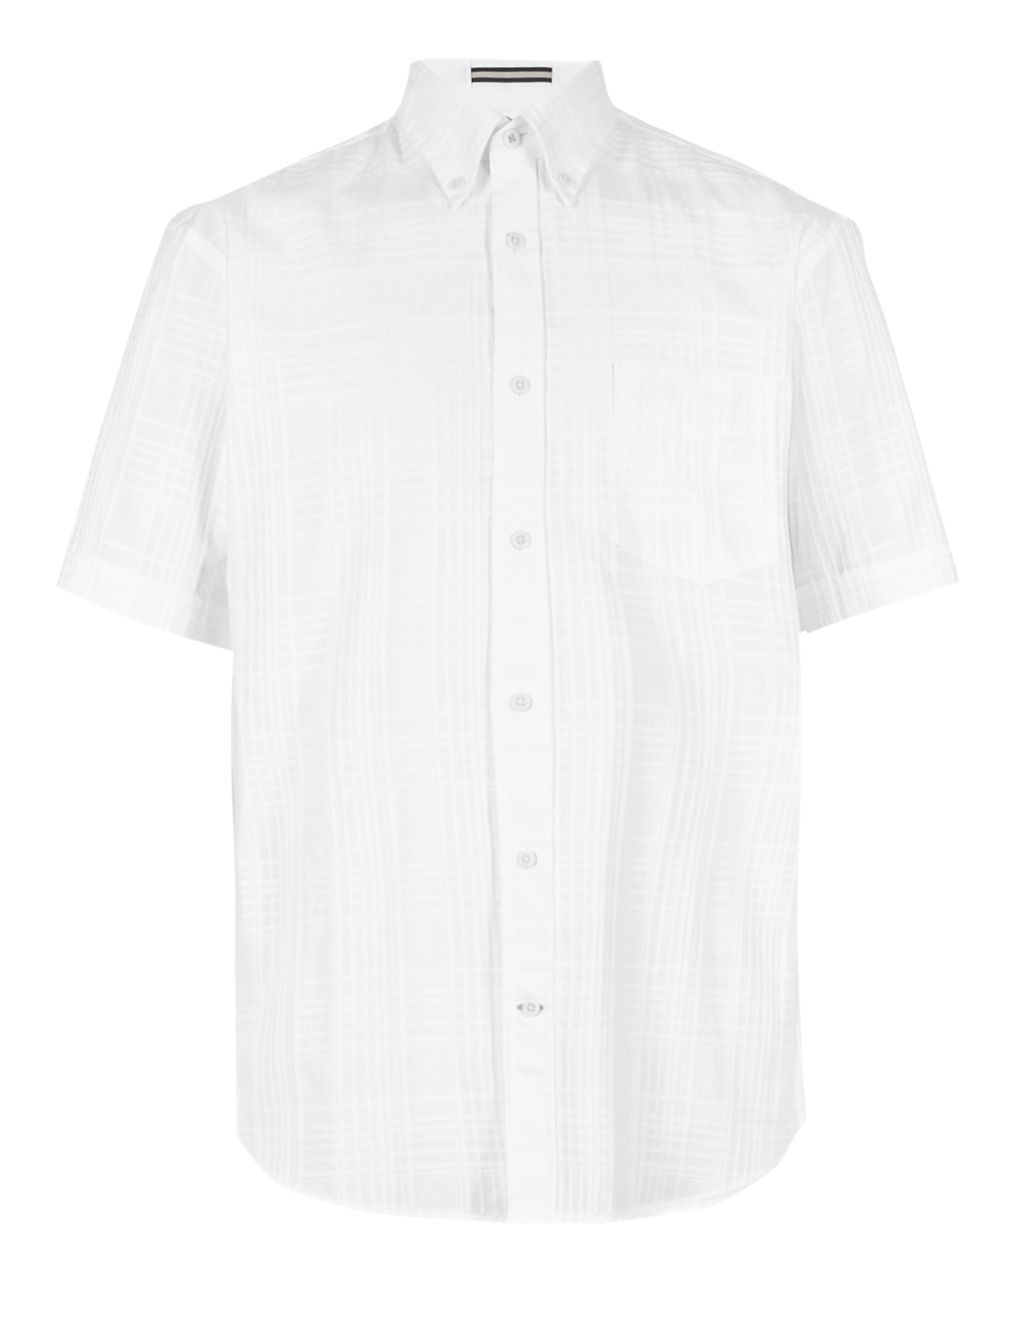 XXXL Pure Cotton Short Sleeve Textured Shirt 1 of 4